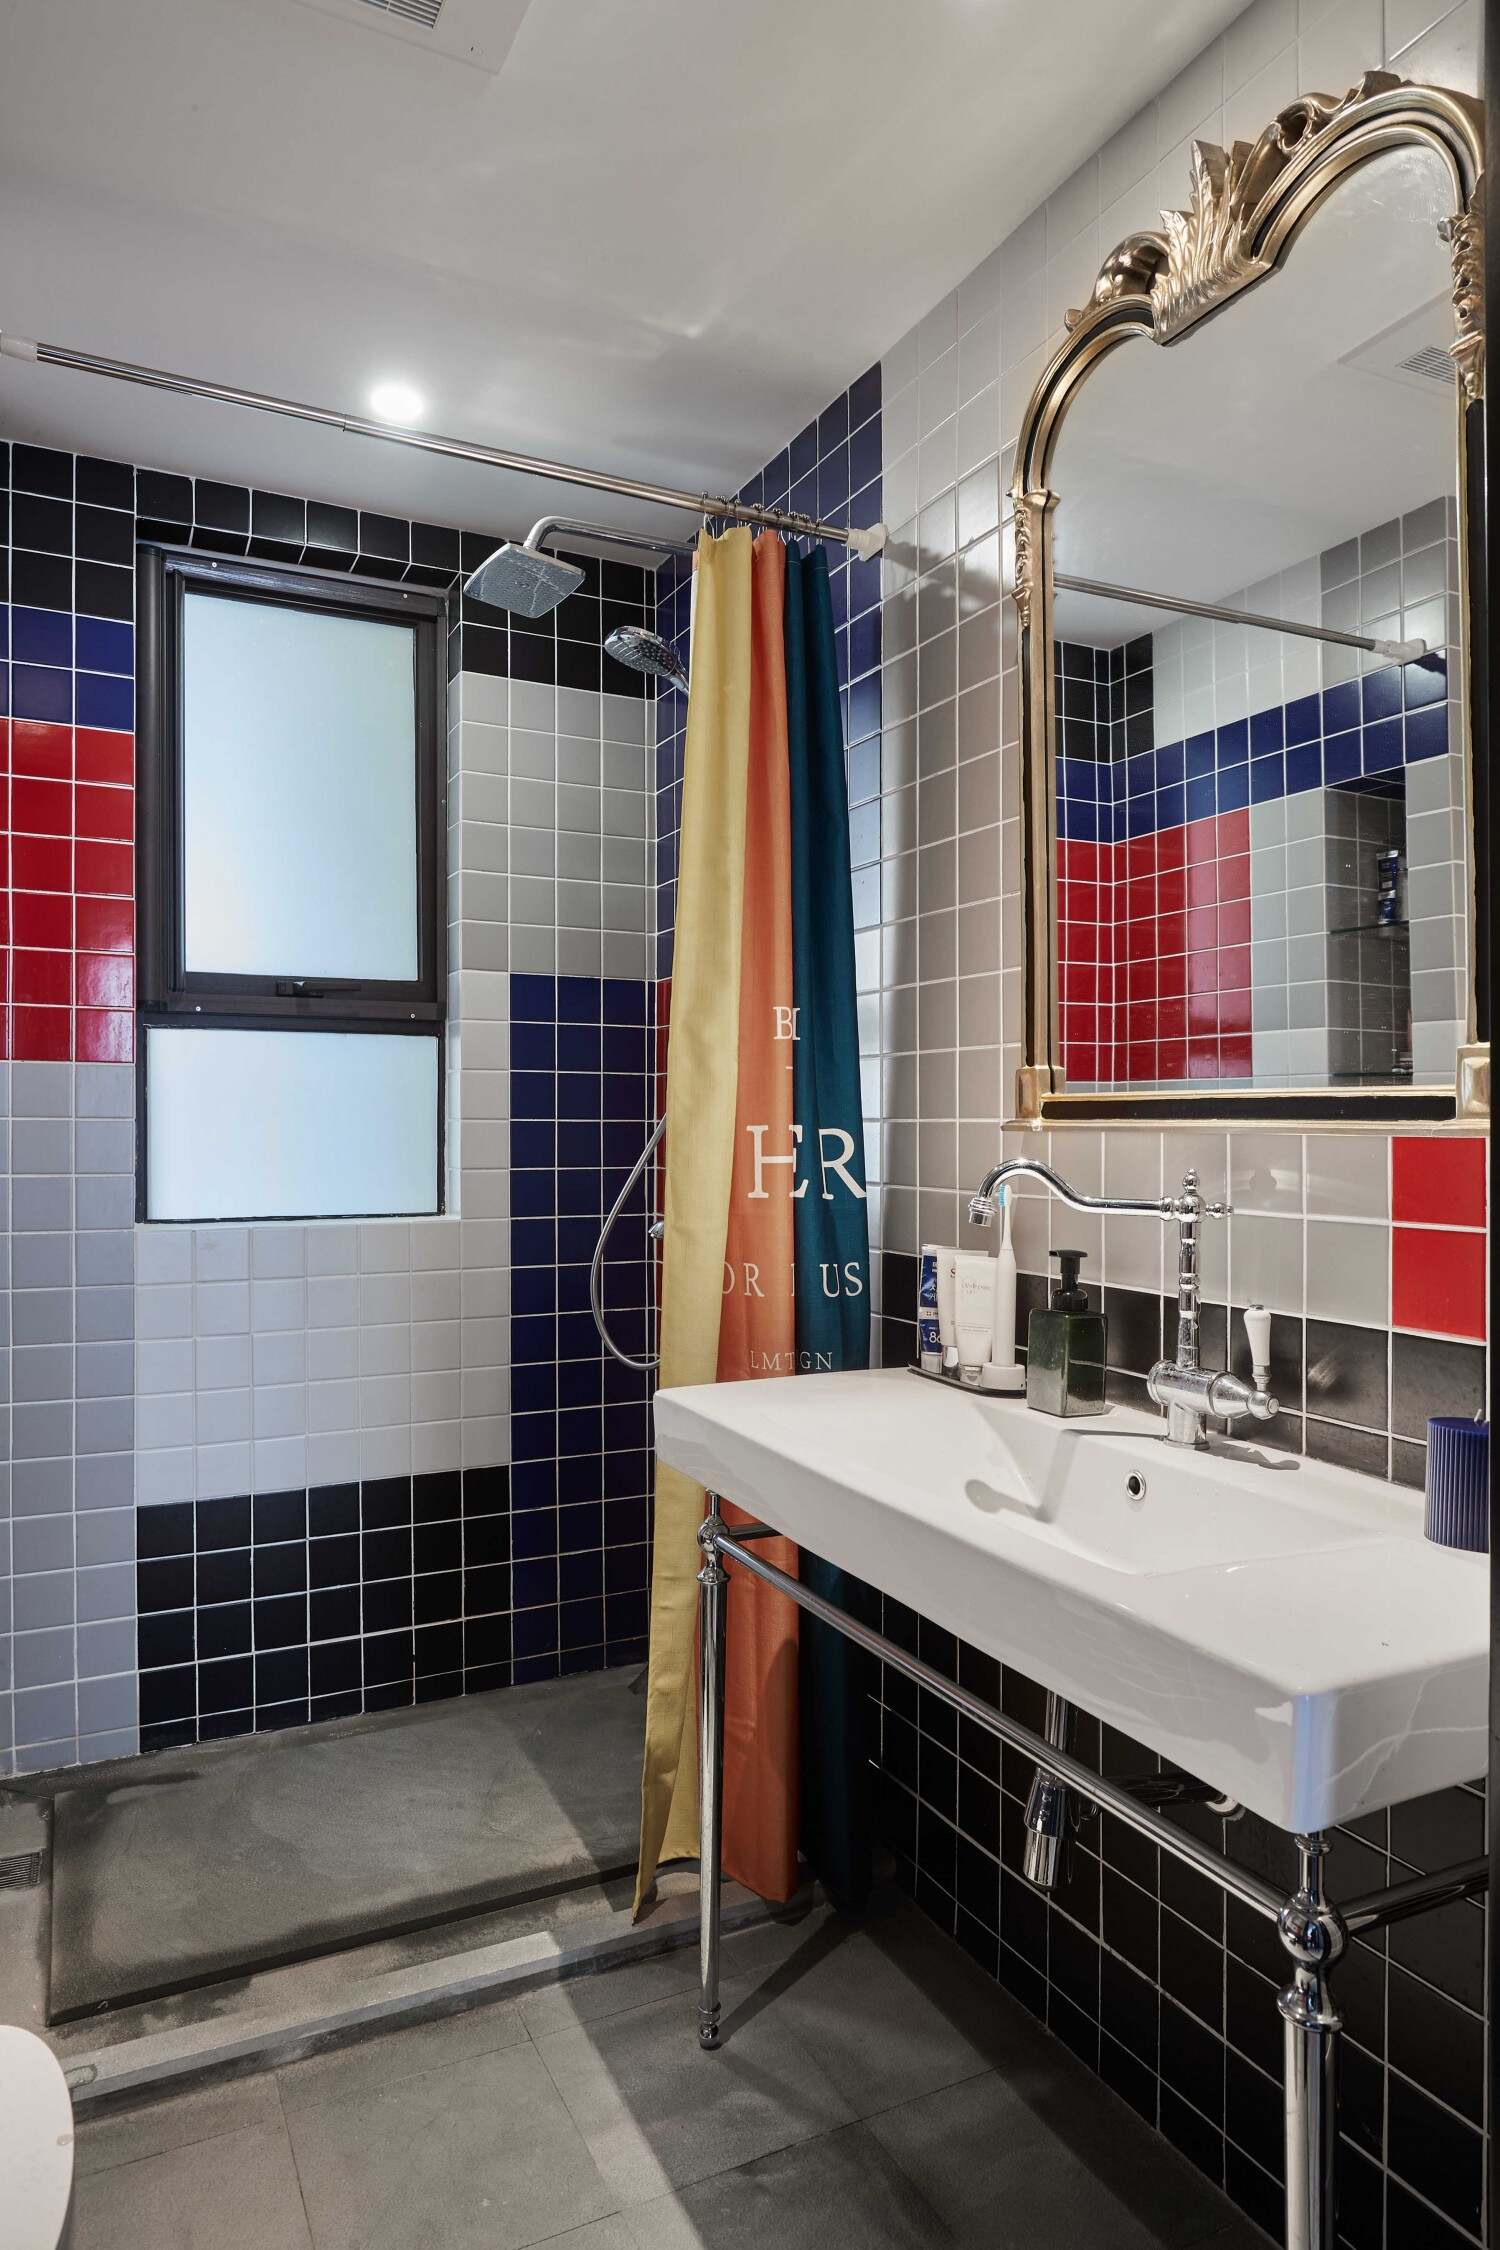 卫生间虽然一就是用的瓷砖，但是此瓷砖非彼瓷砖，真爱是白色，浅蓝色，红色，蓝色等众多颜色组成的一种缤纷卫生间。